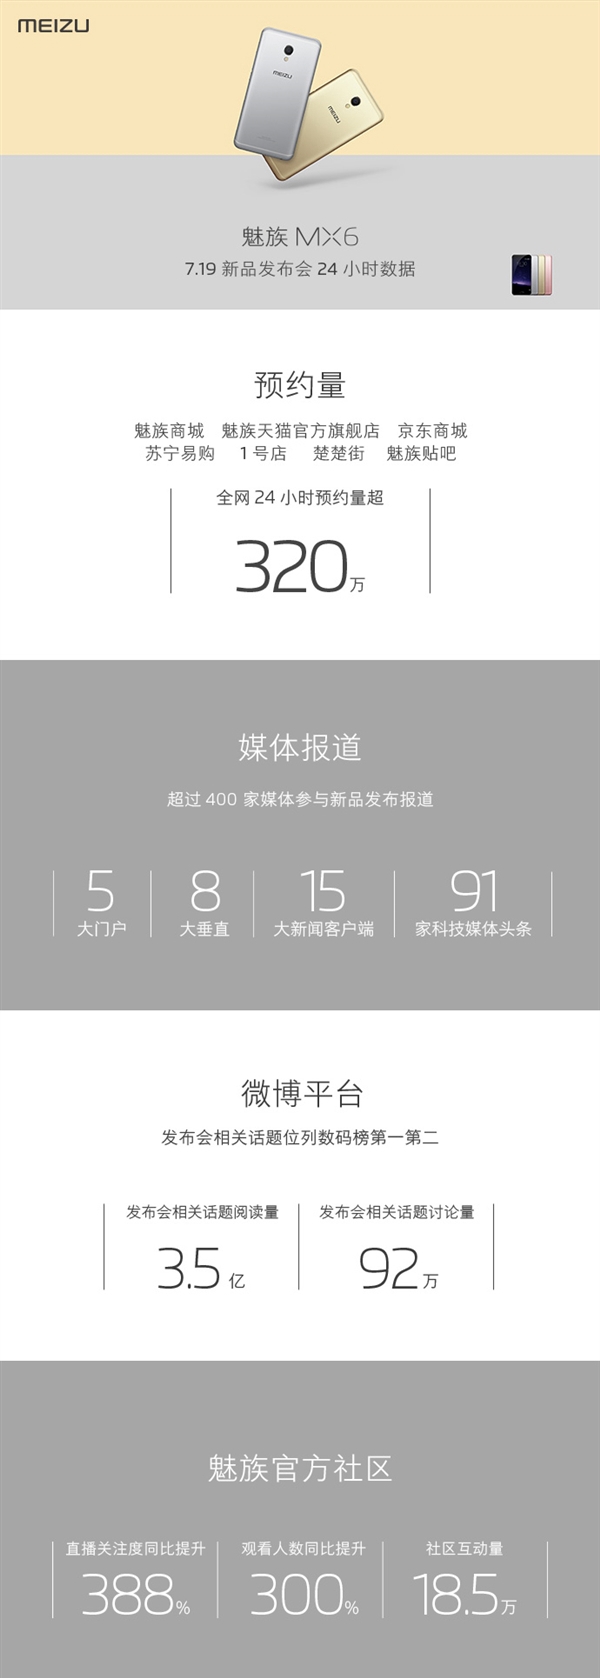 魅族公布MX6预约量：24小时超320万台